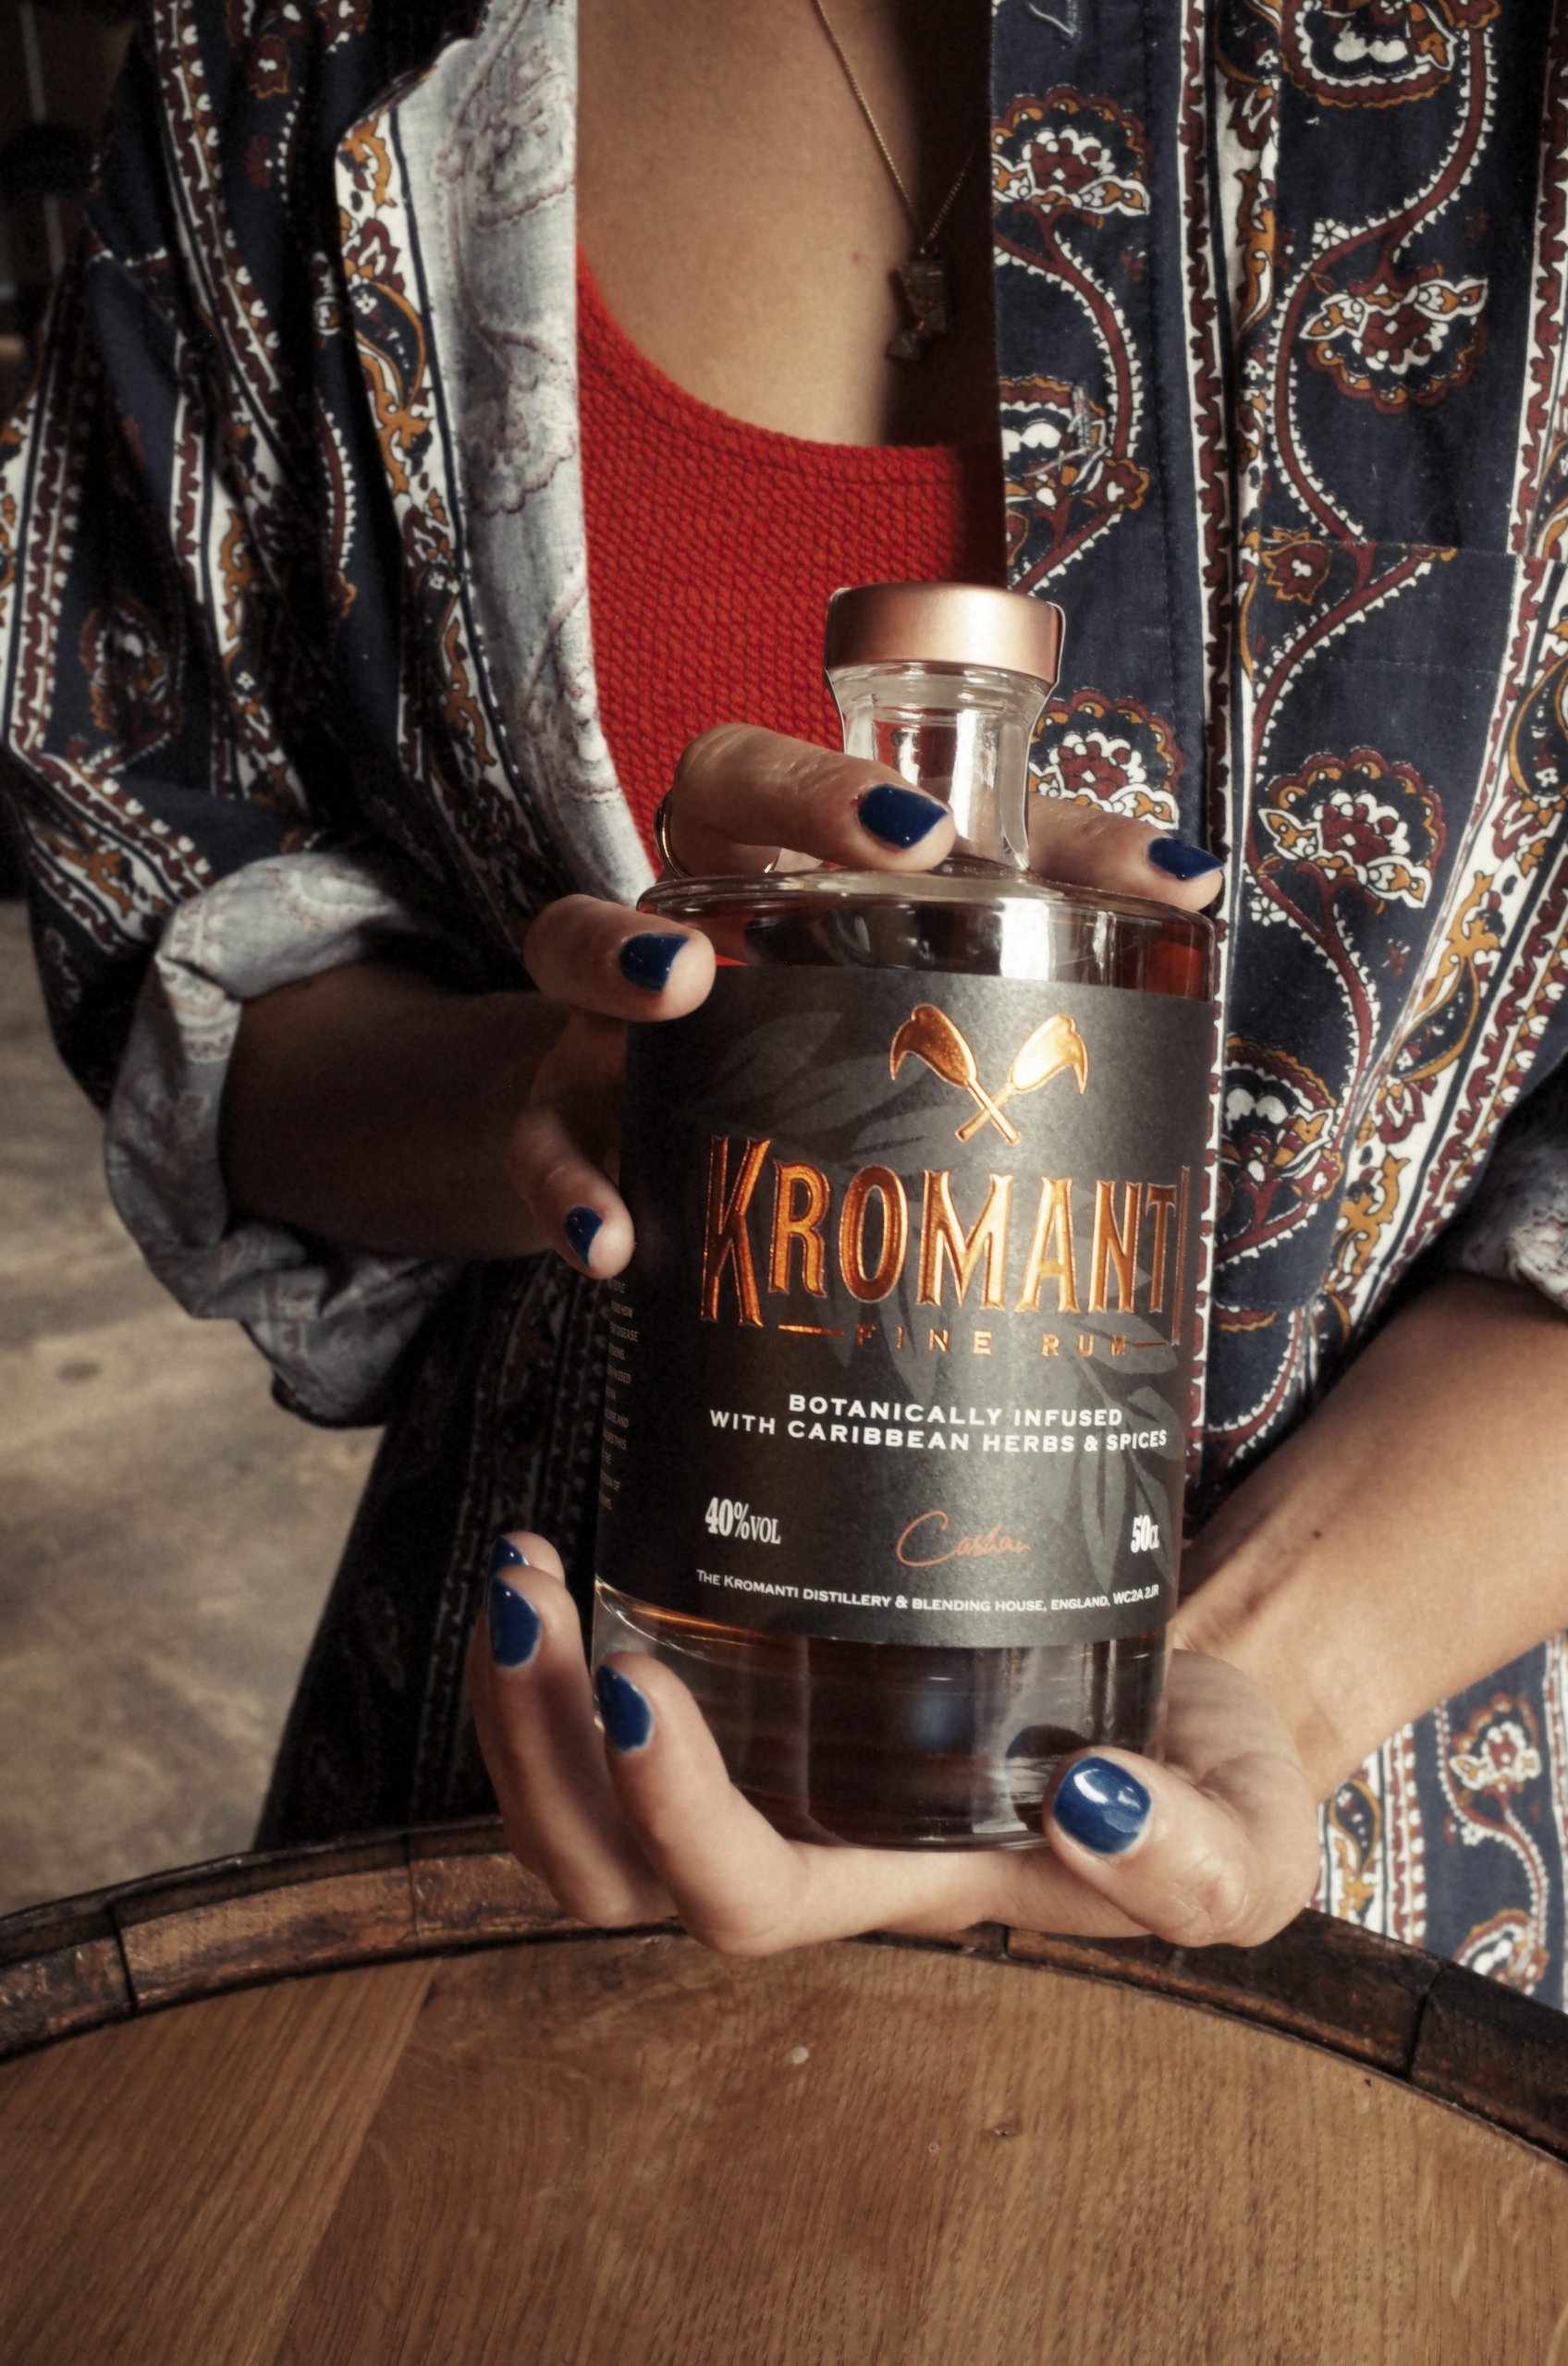 Kromanti Tamarind Infused Rum